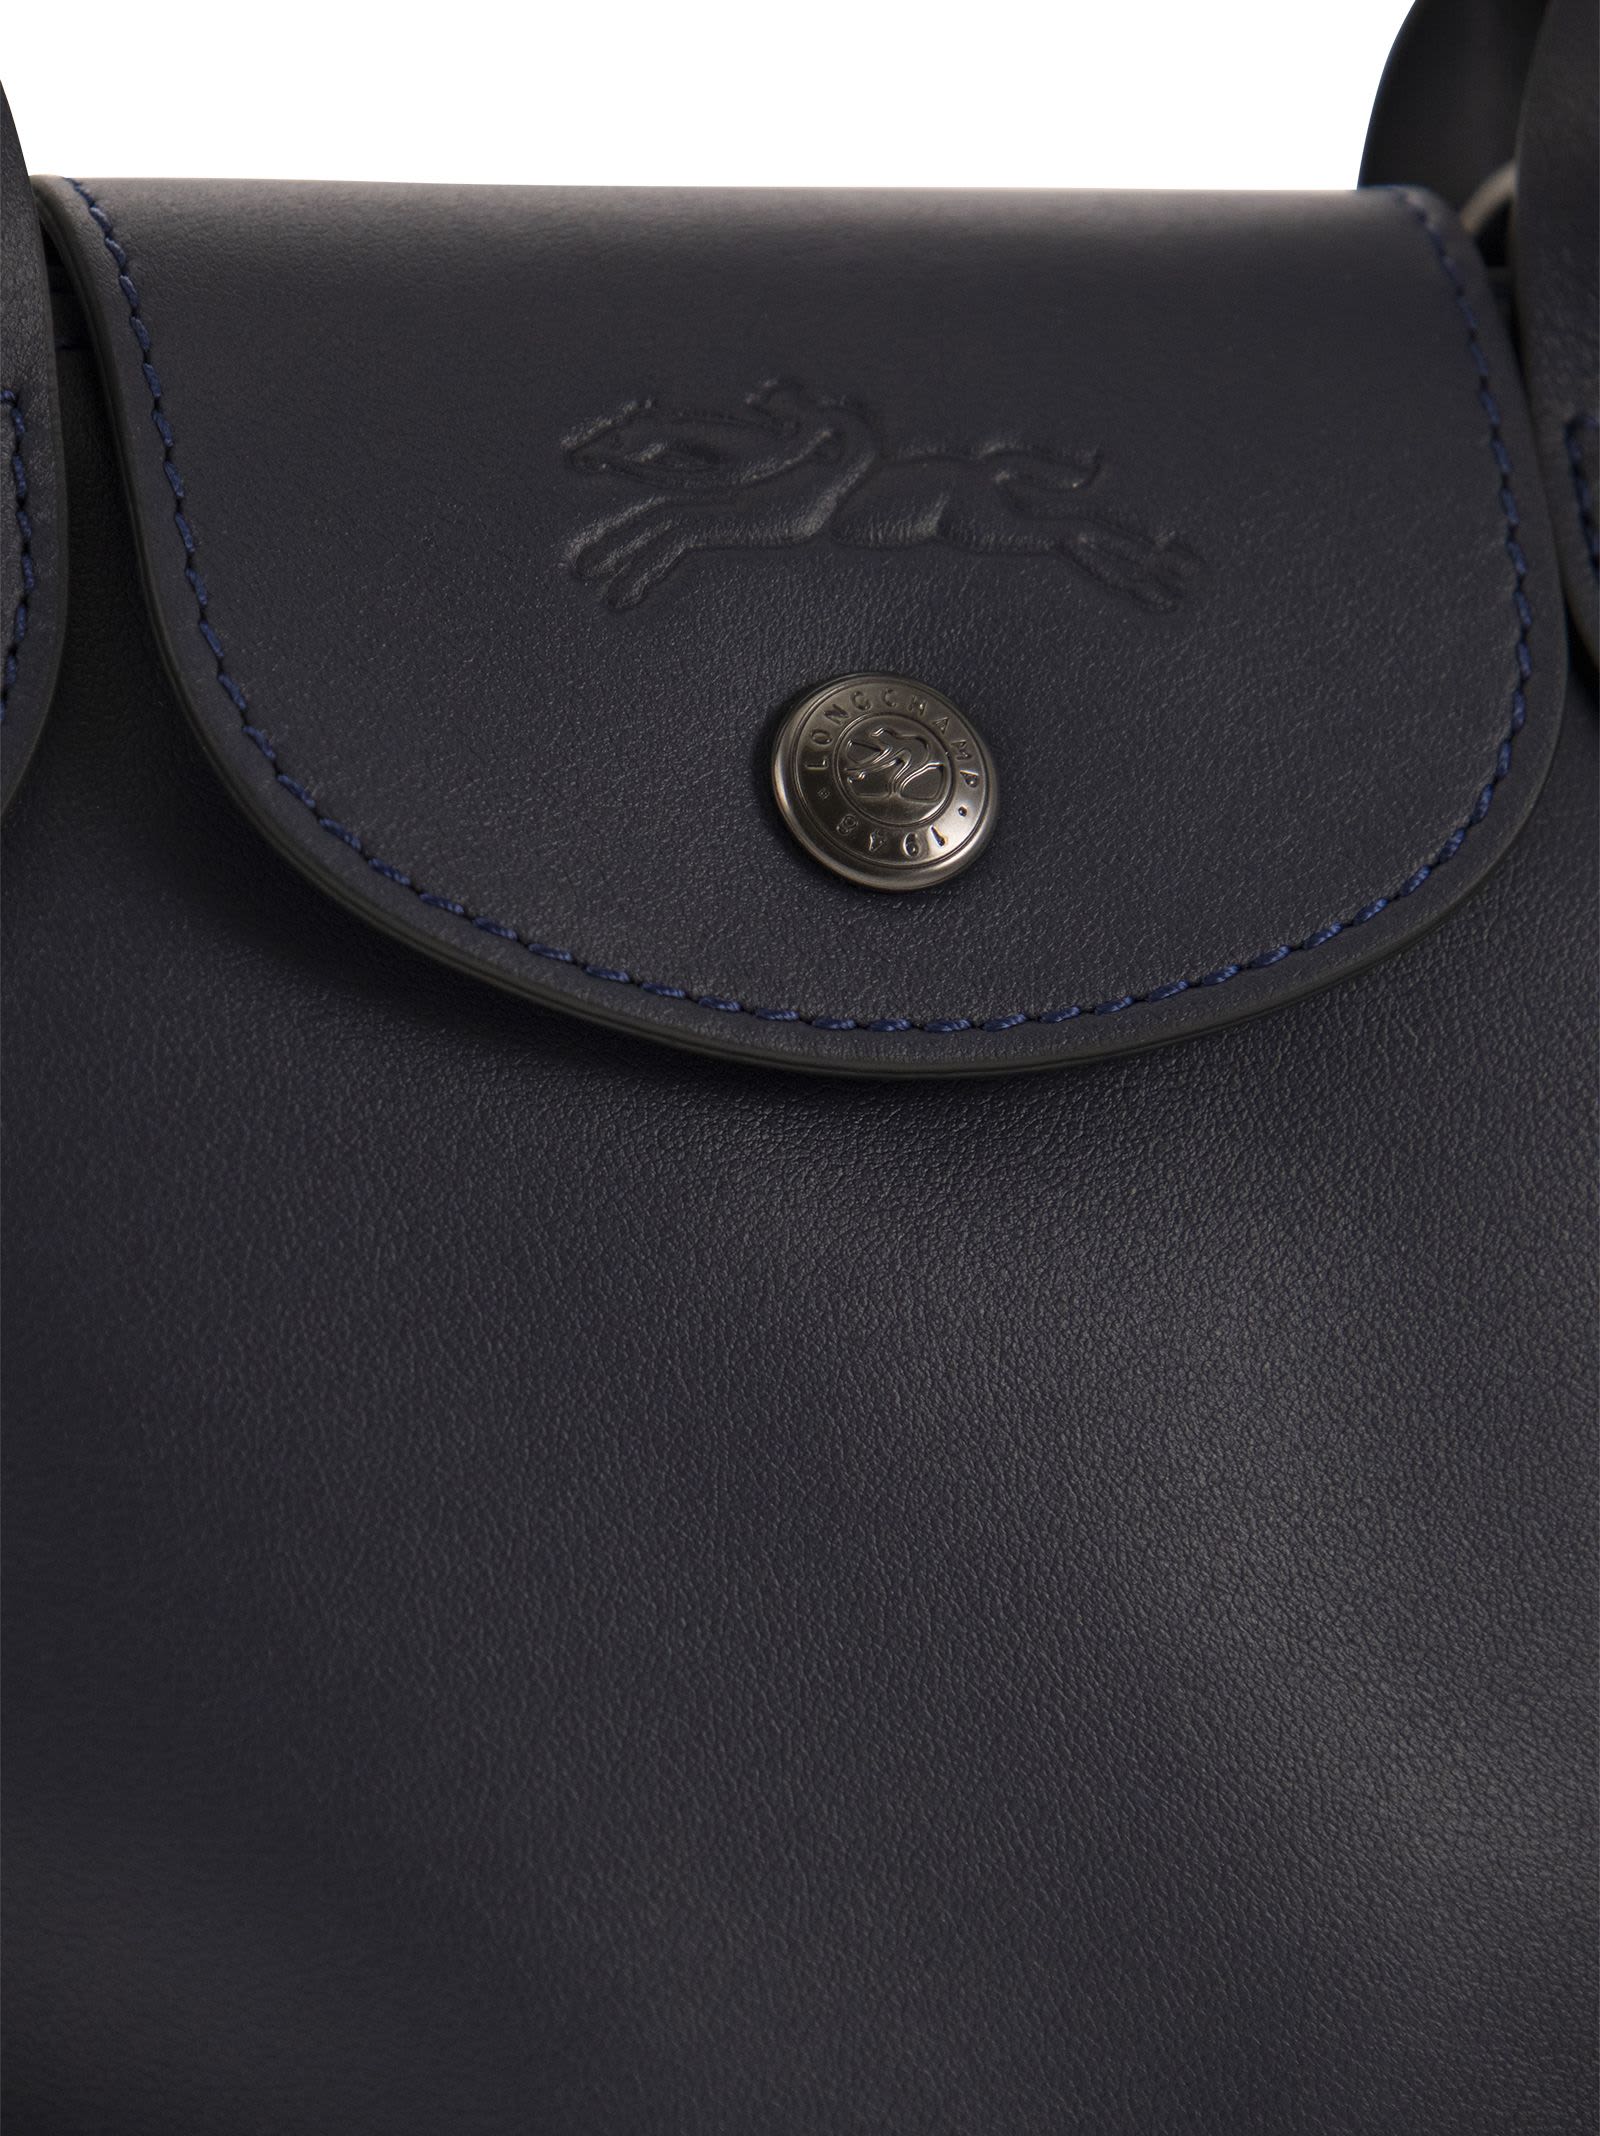 Le Pliage Xtra L Handbag Wheat - Leather (10201987A81)